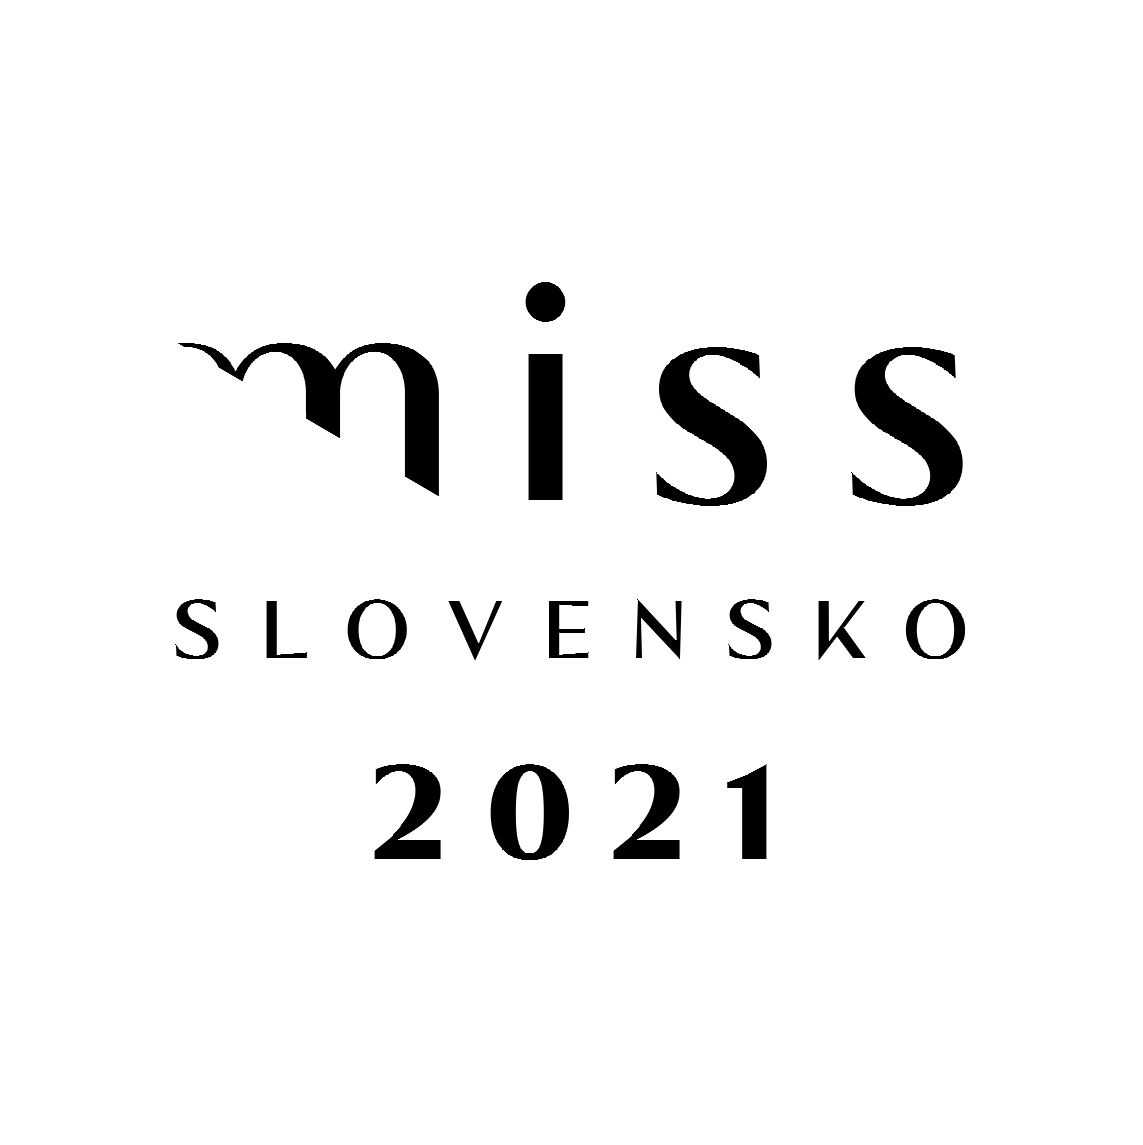 Podporili sme nový ročník súťaže MISS SLOVENSKO 2021 ako hlavný reklamný partner